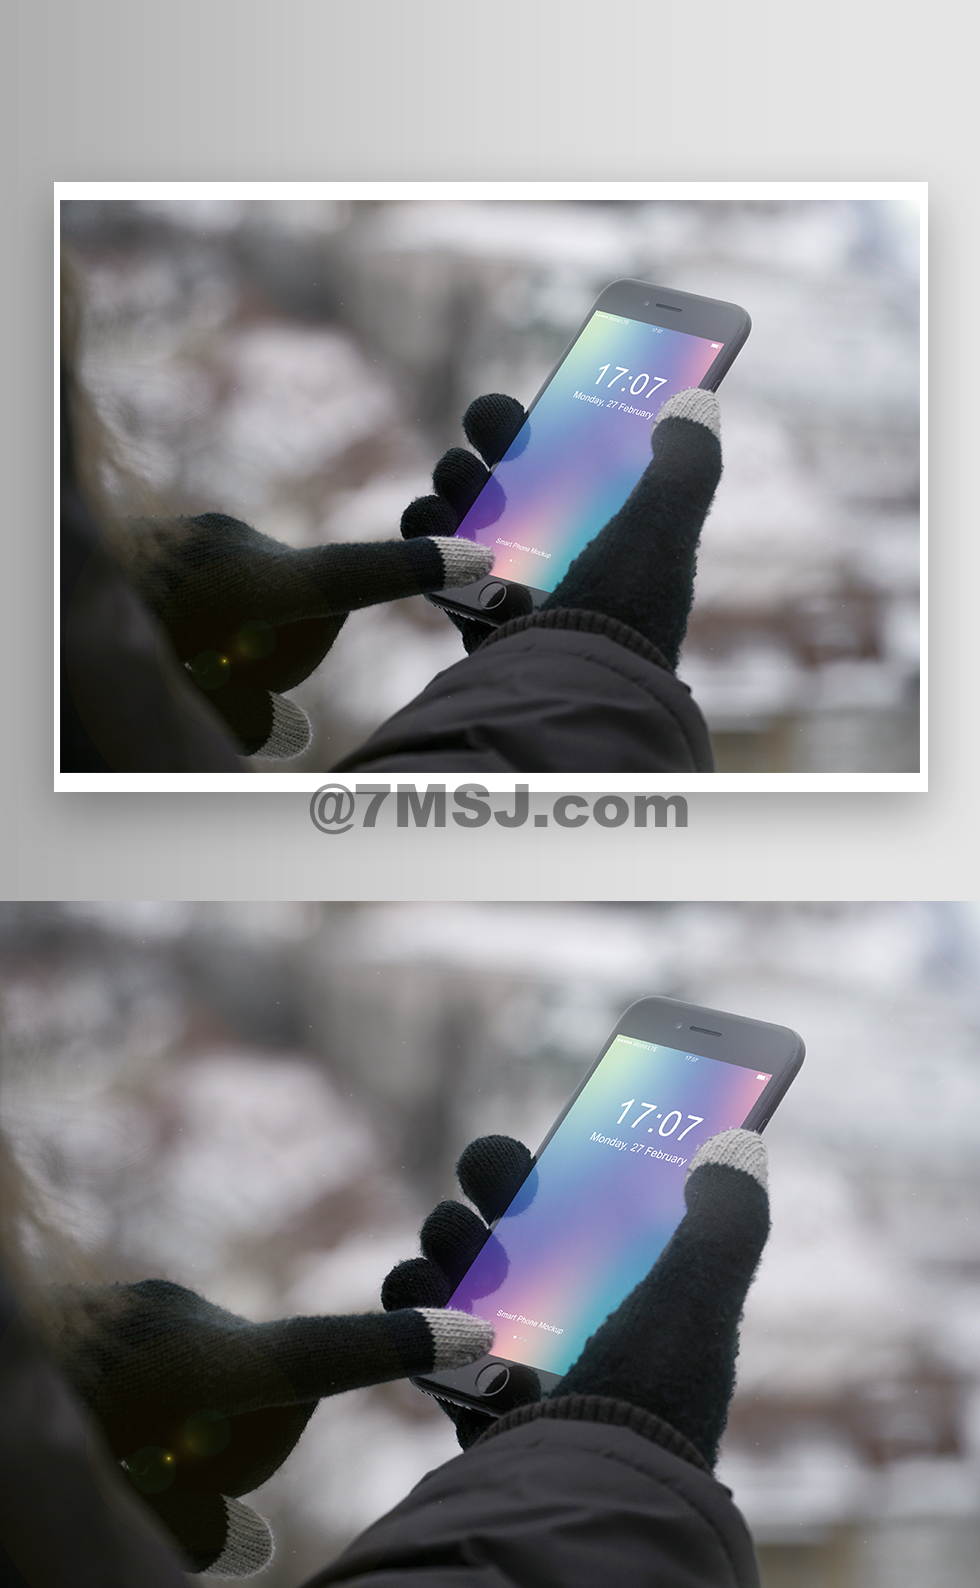 冬天雪地场景智能手机iphone 8 App Ui Kits样机vi展示模型图片免费下载 七米网